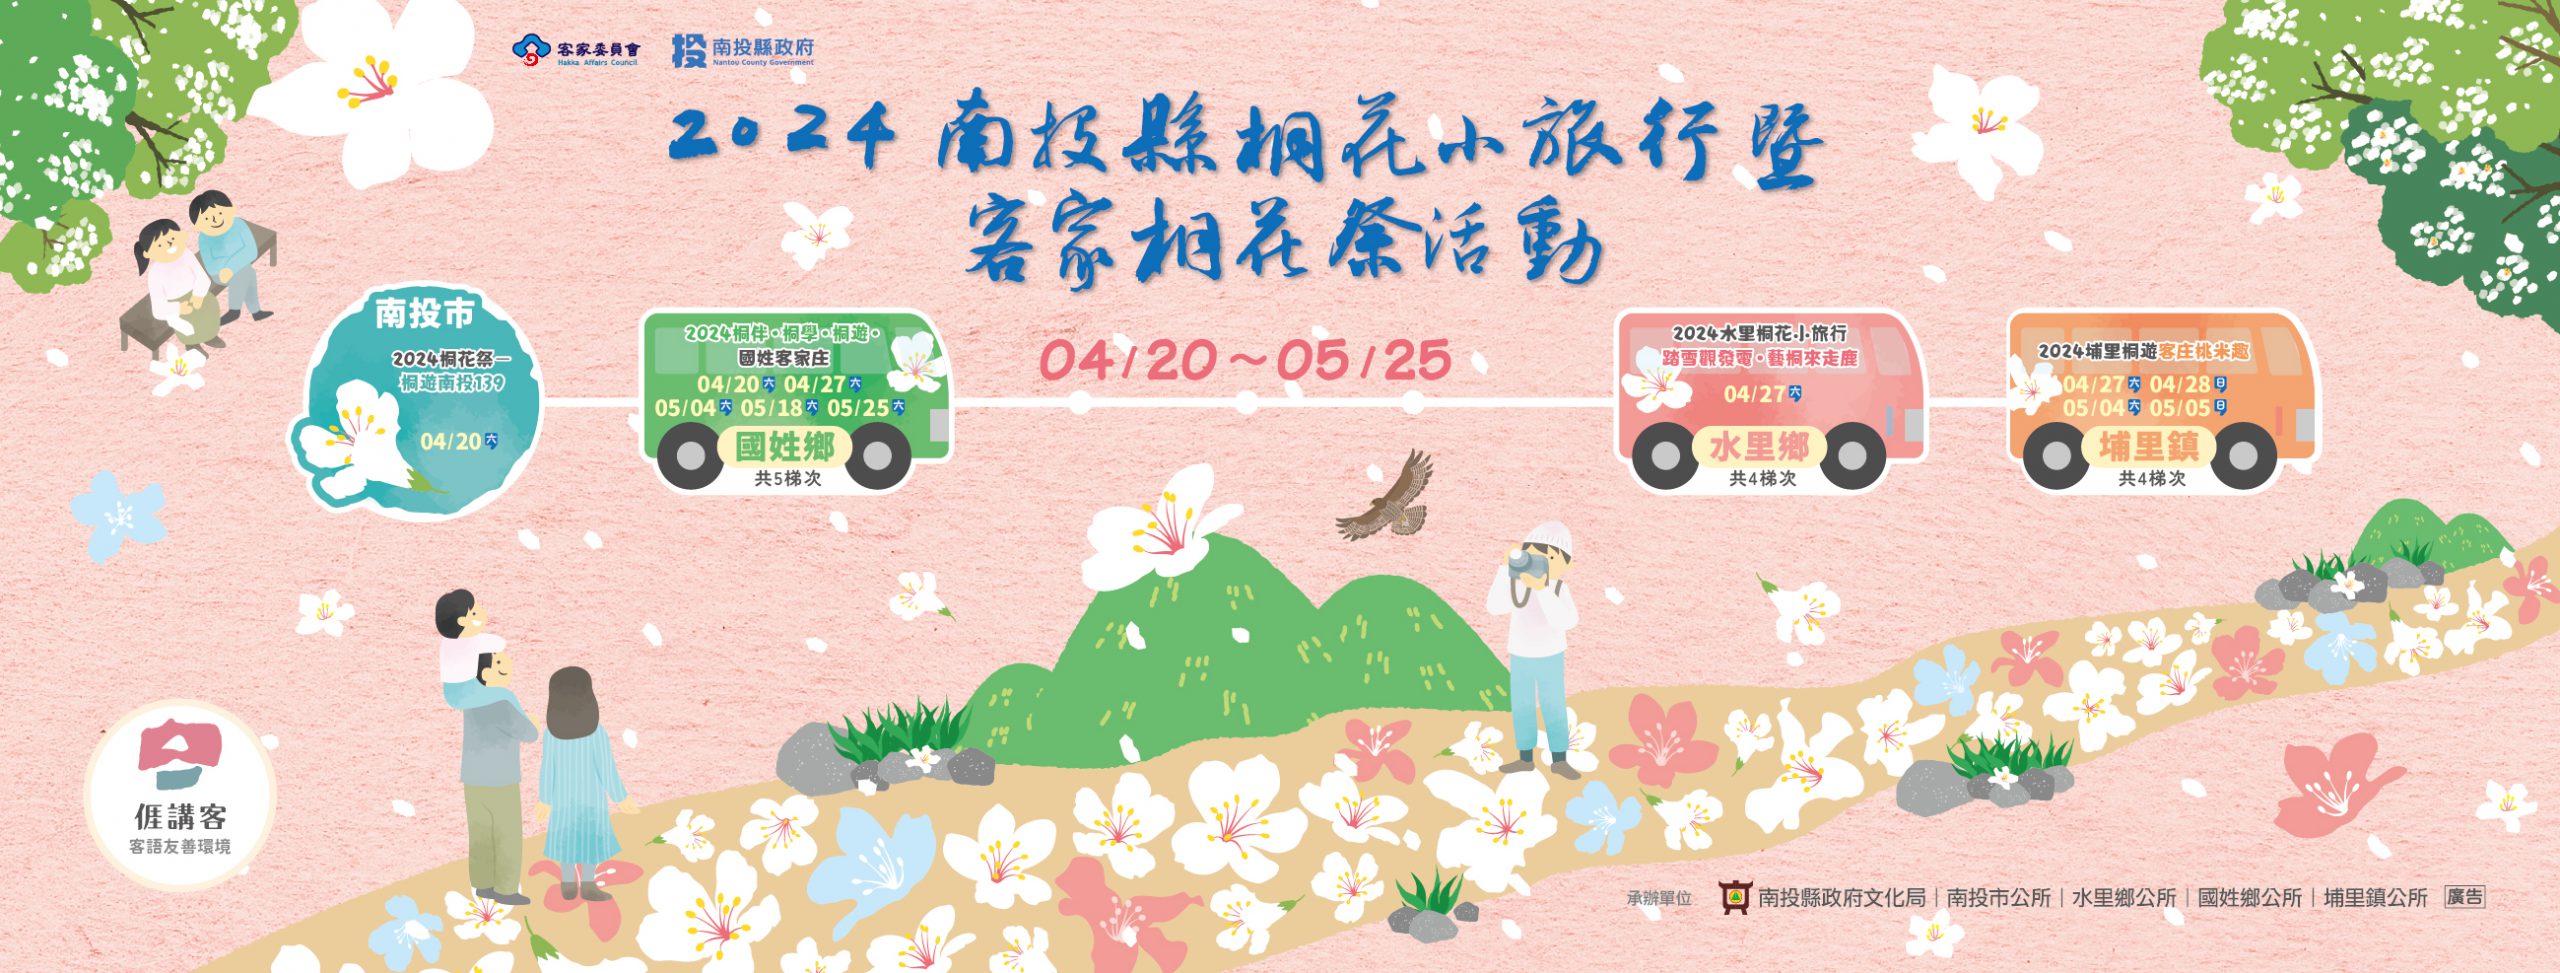 南投県の桐花小旅行および客家桐花祭が20日から順次開催されます